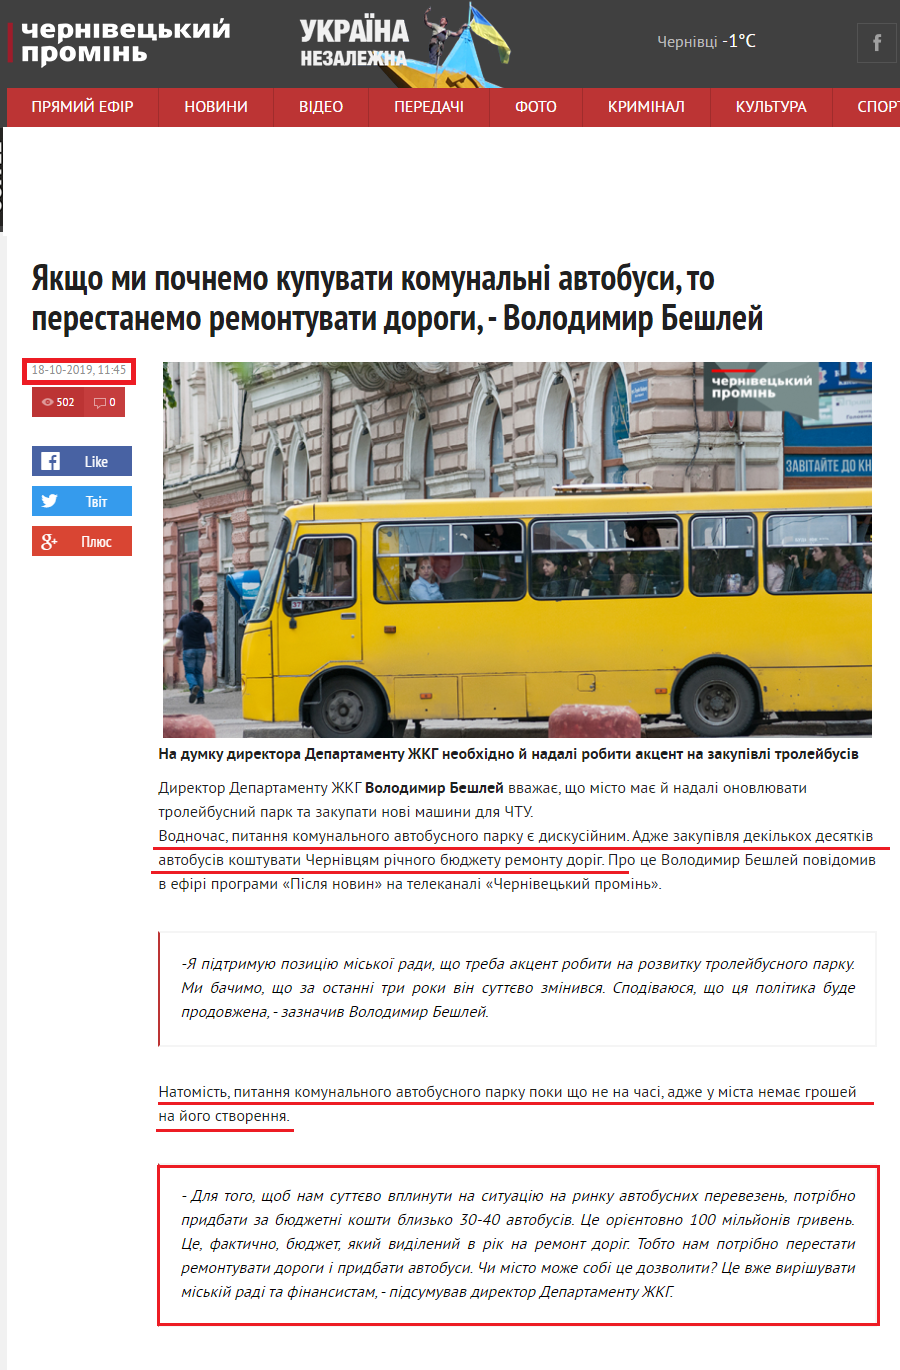 https://promin.cv.ua/2019/10/18/yakshcho-my-pochnemo-kupuvaty-komunalni-avtobusy-to-perestanemo-remontuvaty-dorohy-volodymyr-beshlei.html